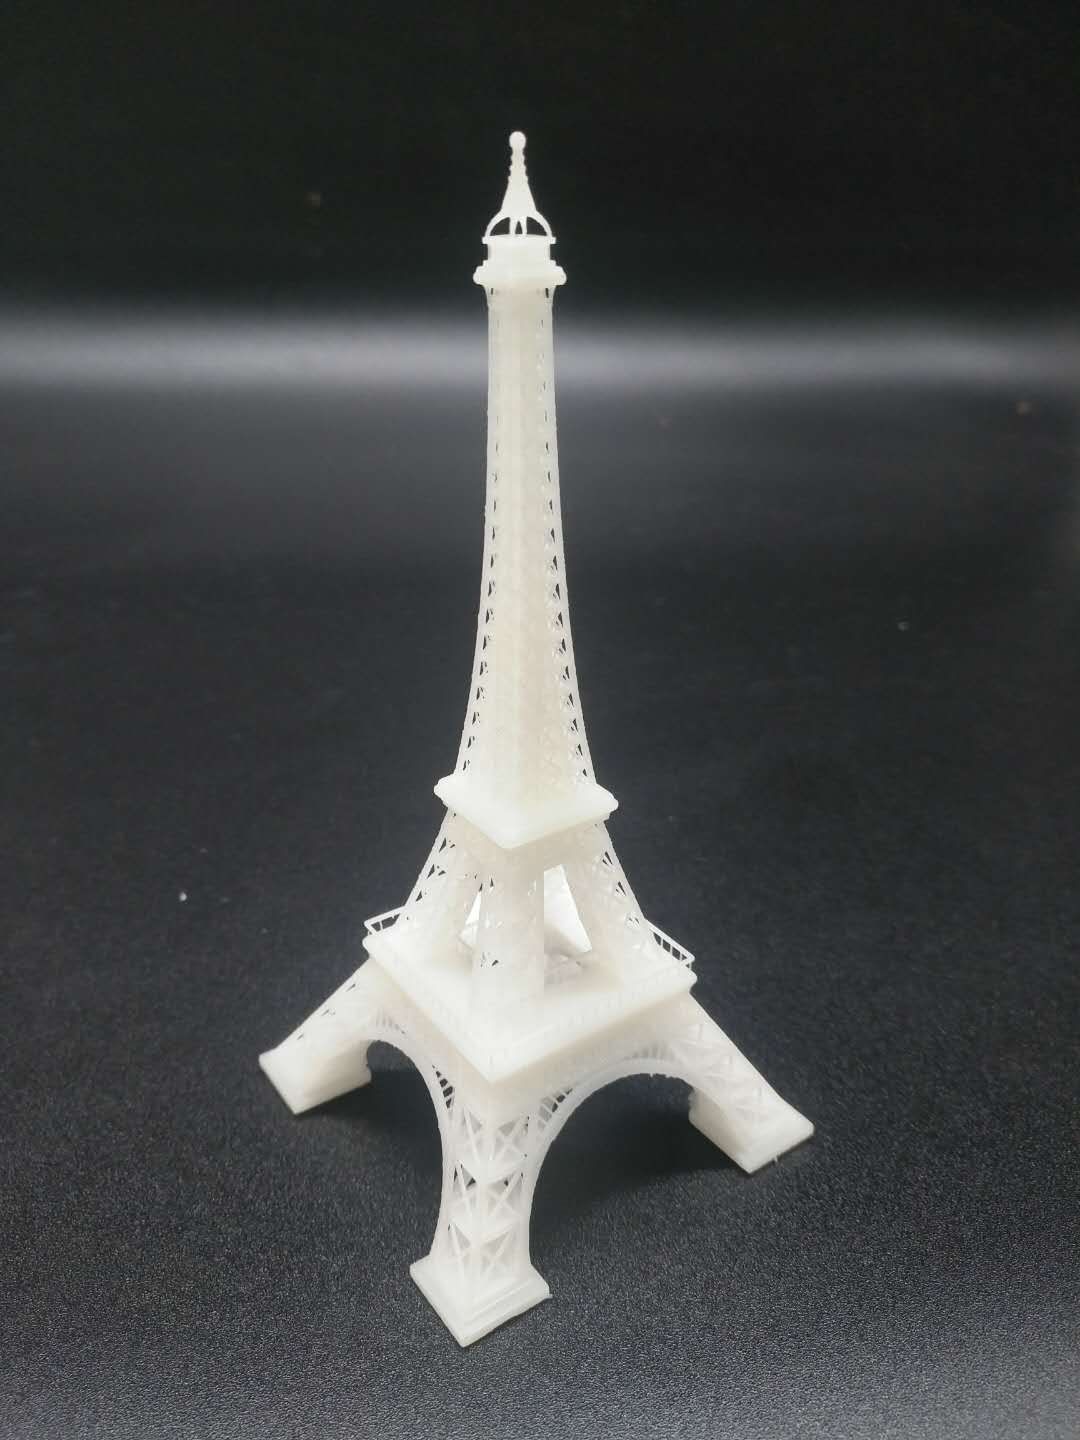 3D Printing Sample